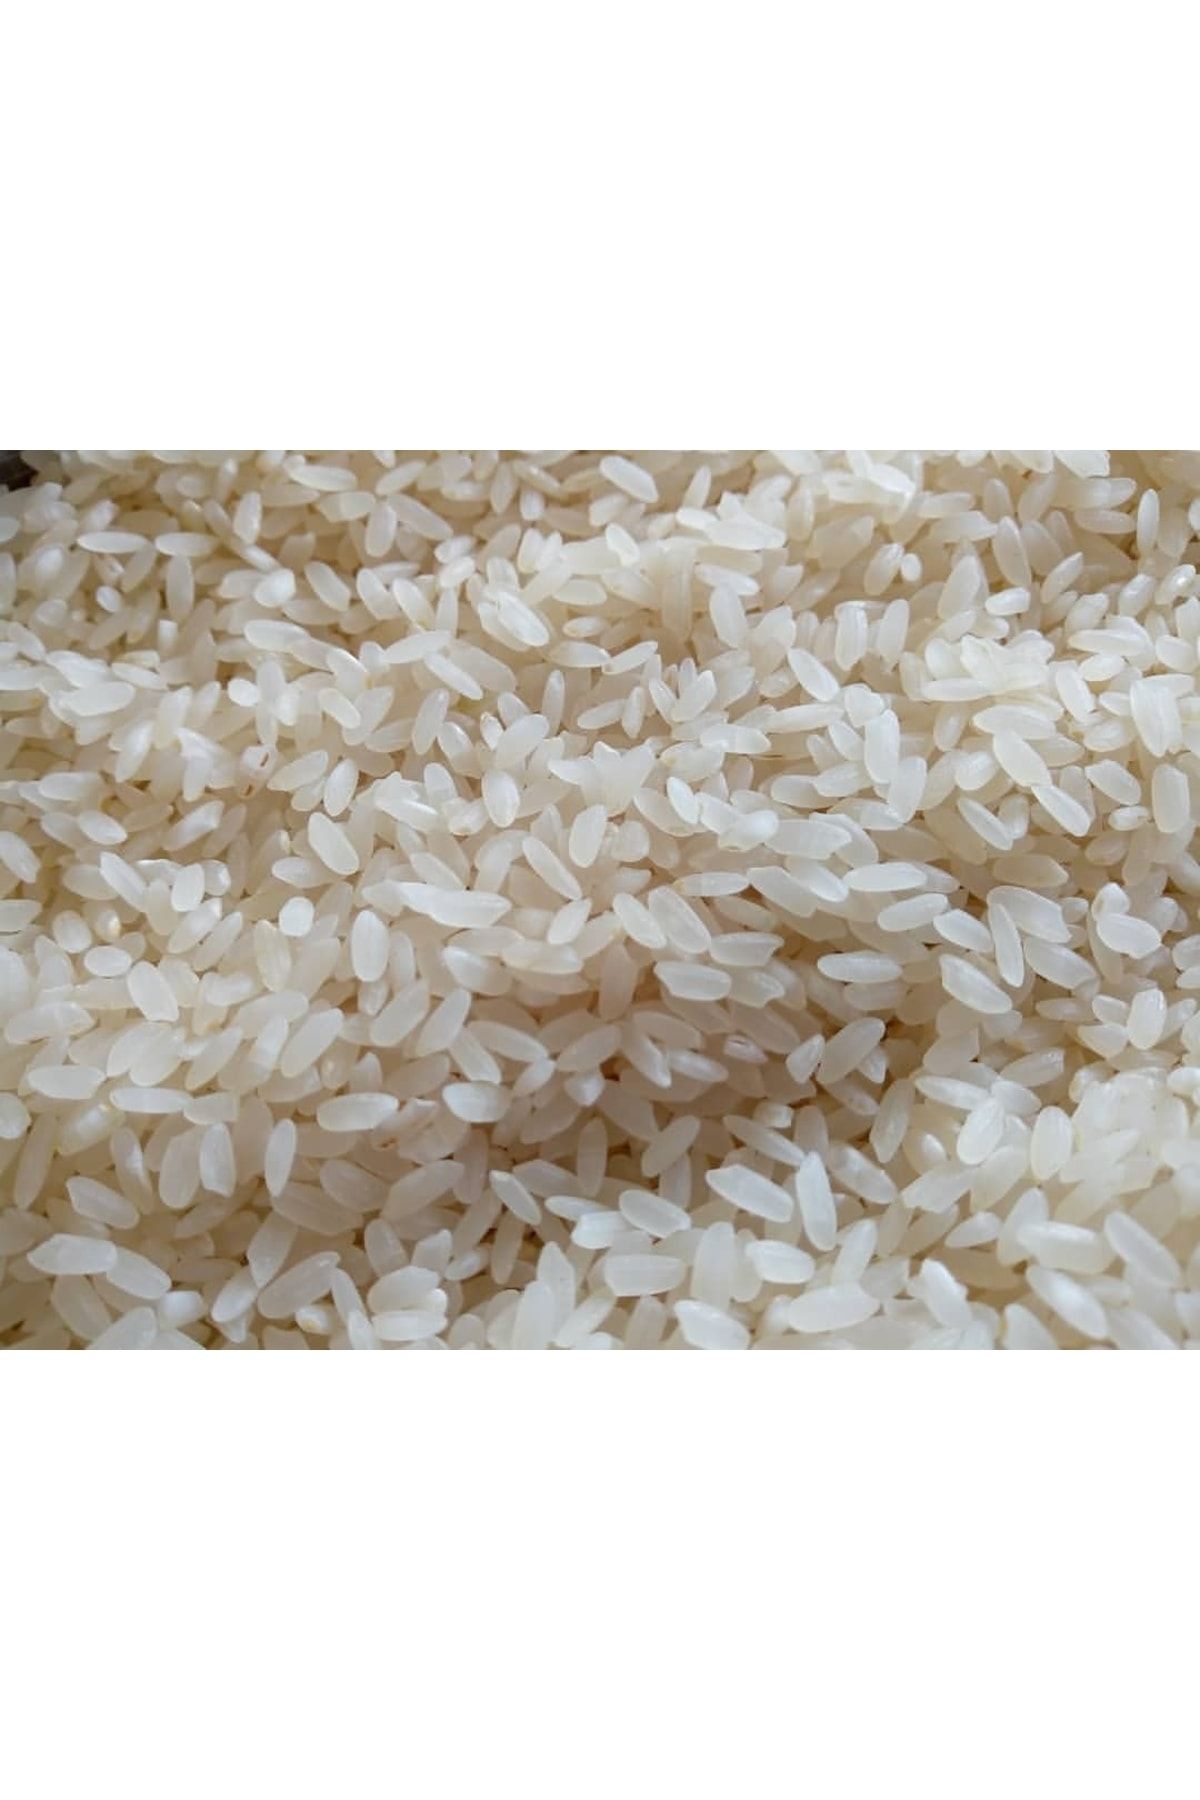 zadehelva Tosya Pirinci - 5 Kg - 2022 Hasatıdır